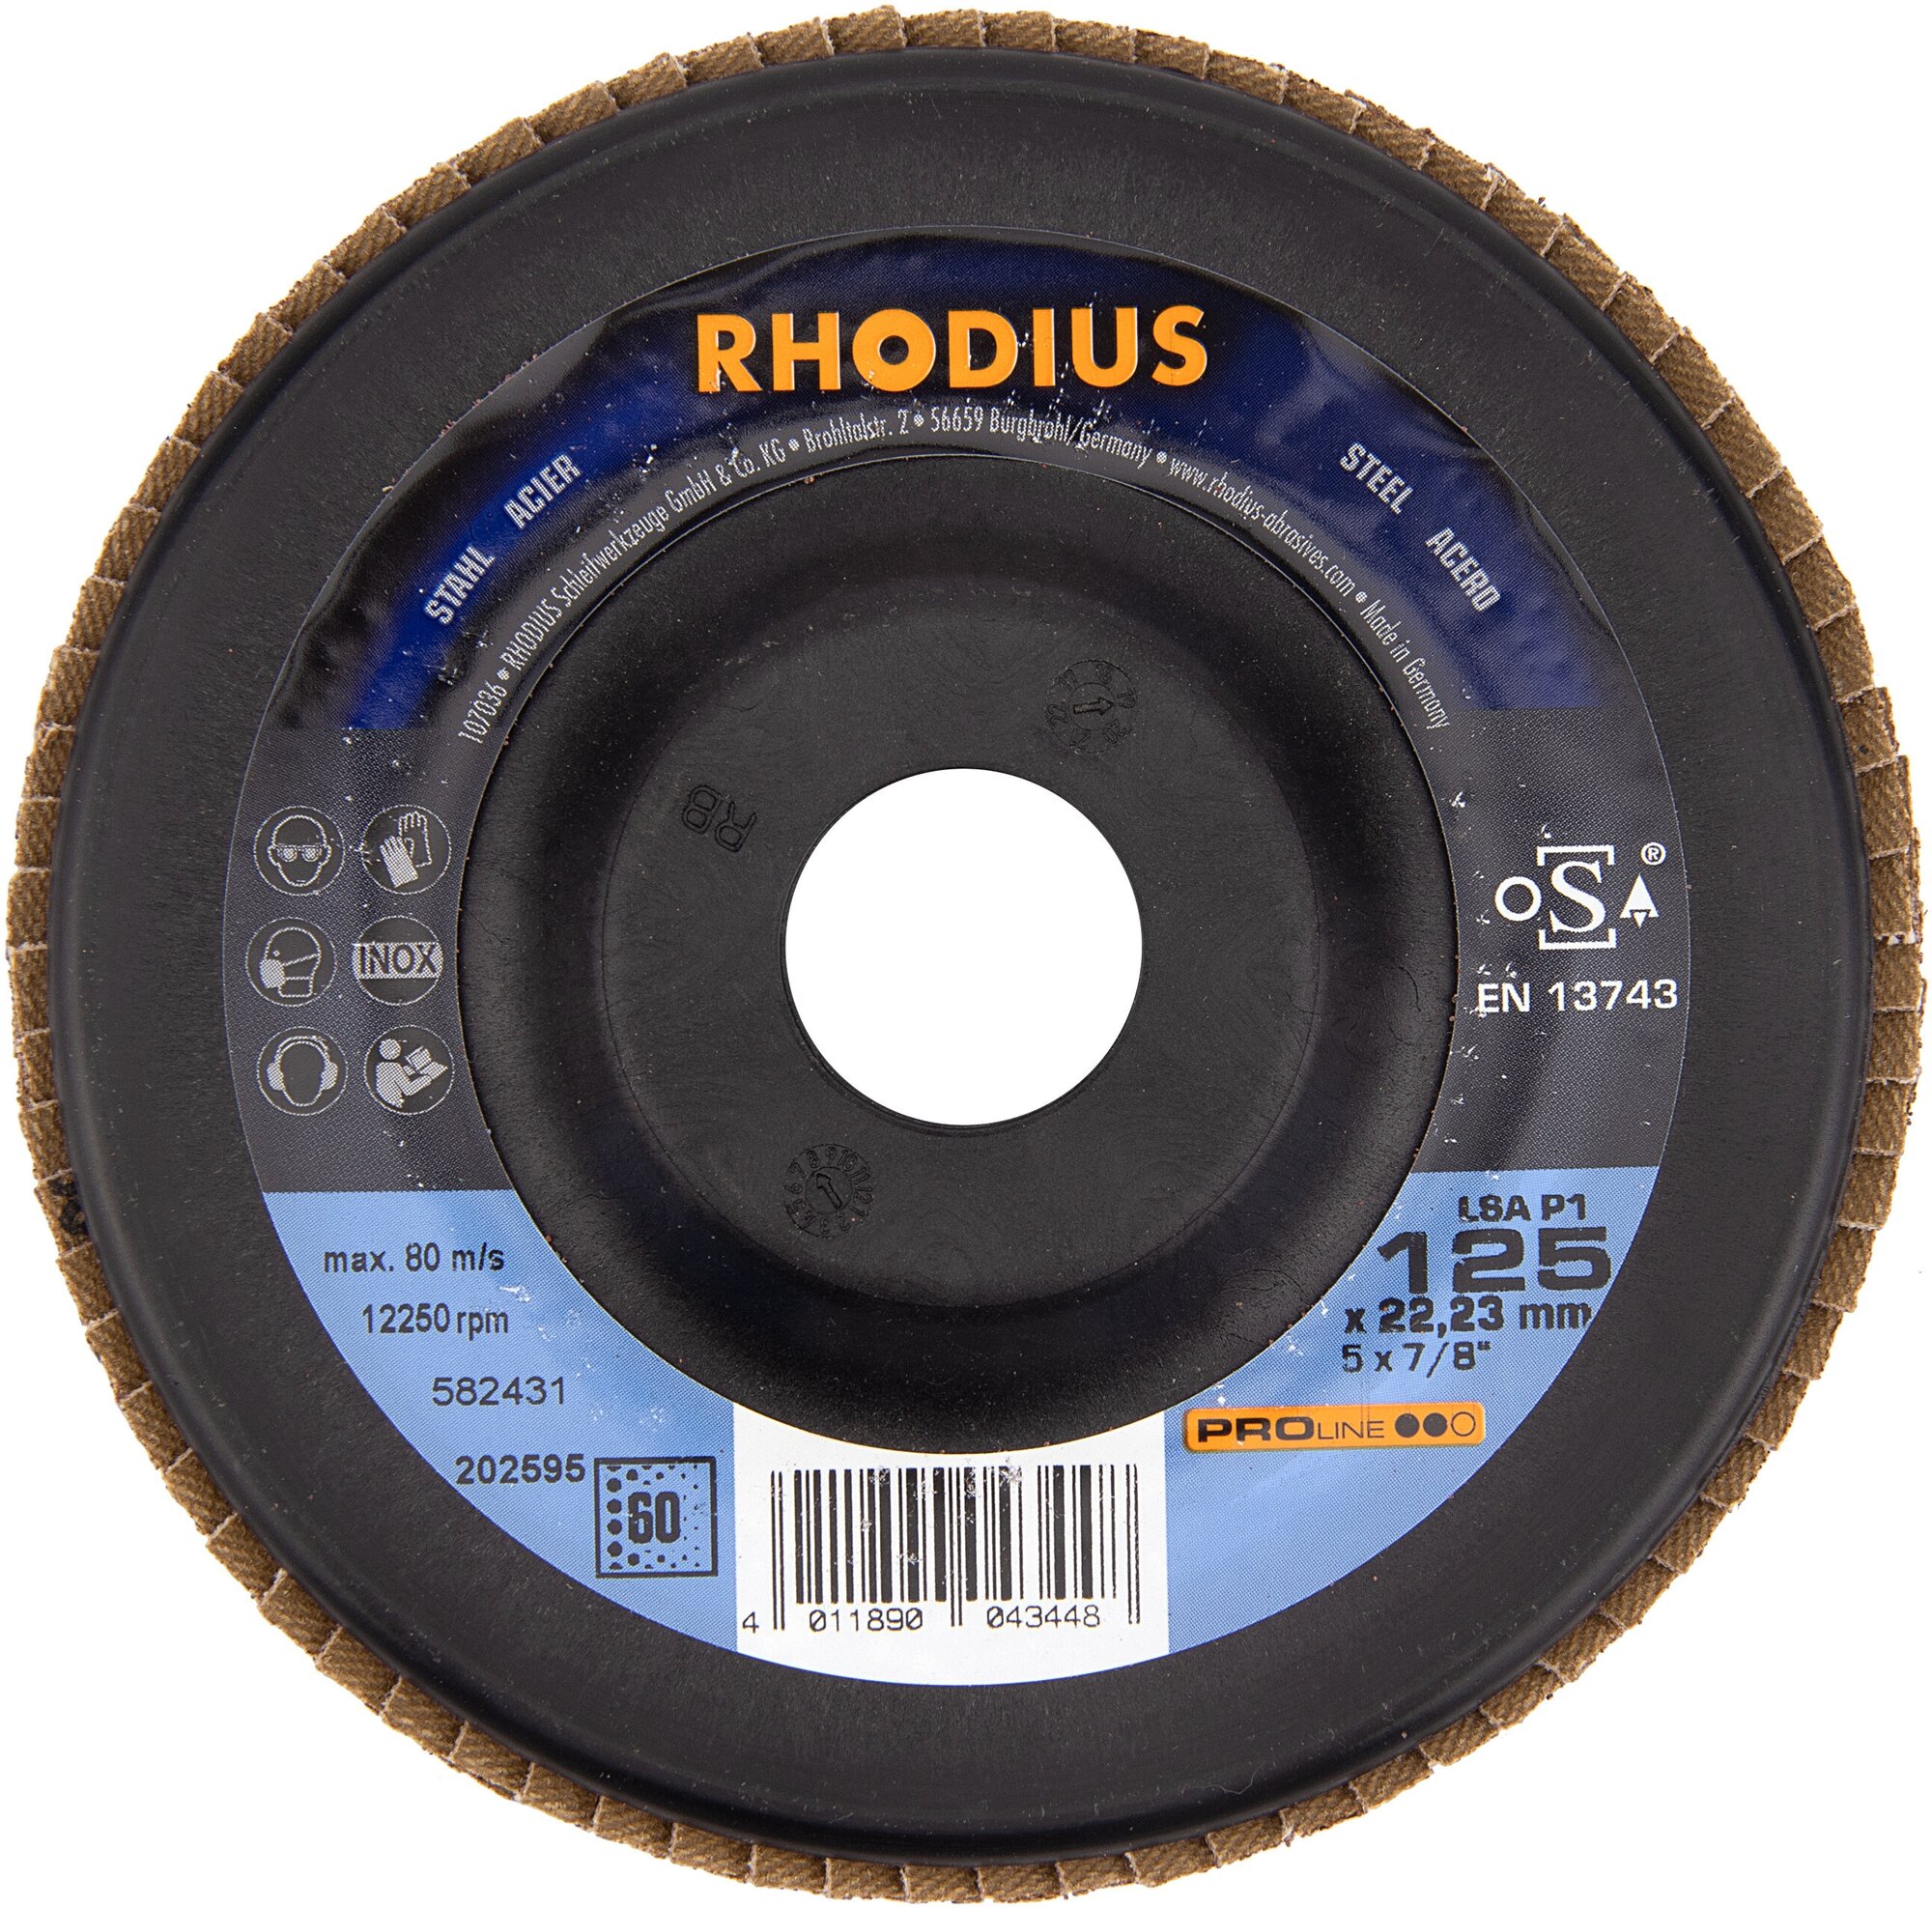 Универсальный наклонный шлифовальный круг RHODIUS из корунда по стали дереву для болгарки/УШМ P60 125x2223 мм